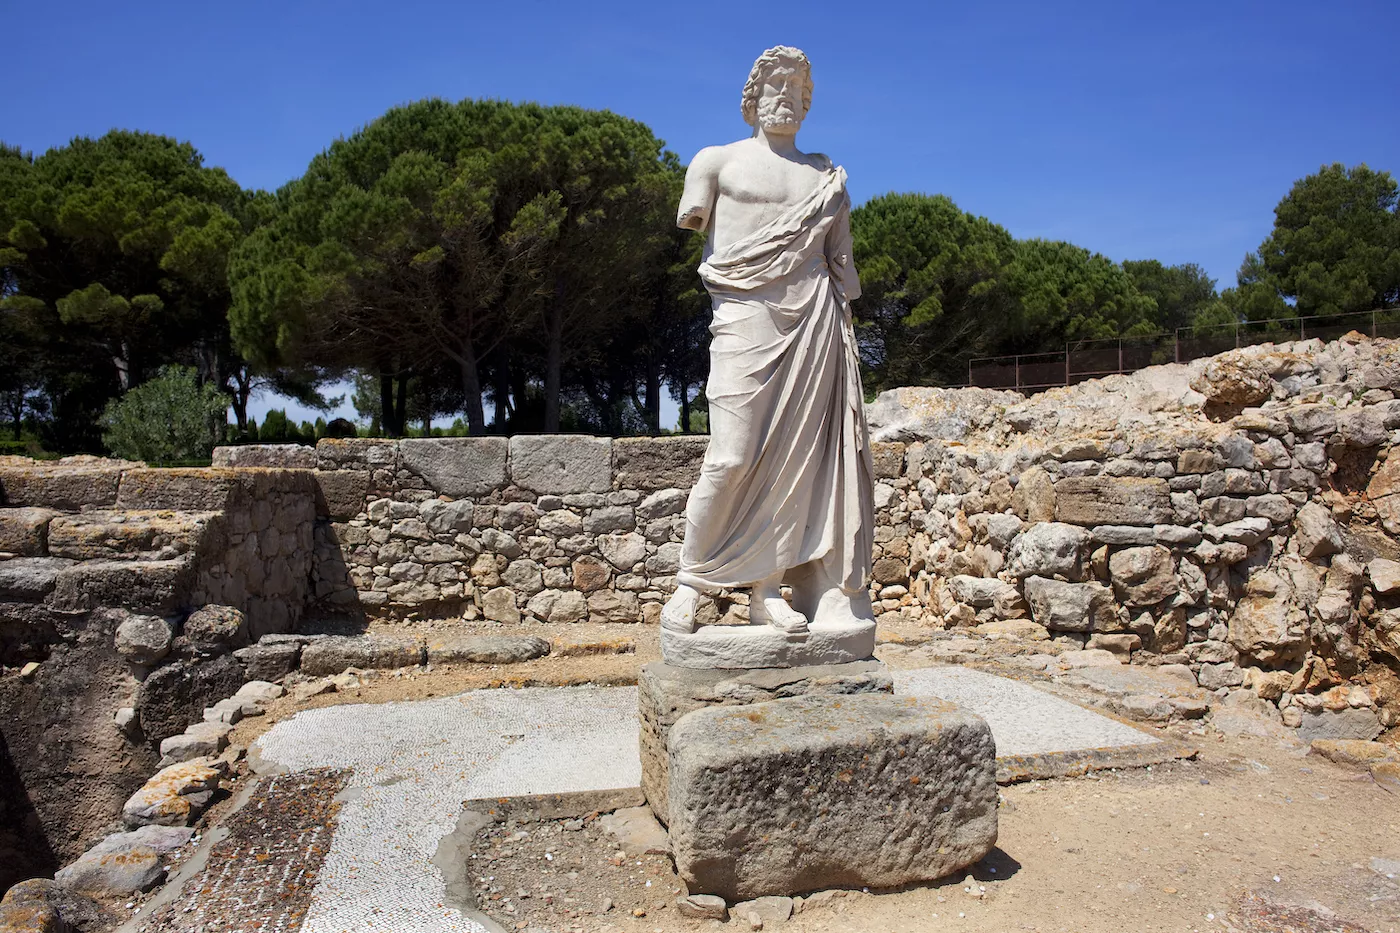 A l’entrada del jaciment hi ha una rèplica de l’escultura d’Asclepi, l’original de la qual es troba dins del museu. L’estàtua es va trobar el 1909 i representa el déu grec de la medicina